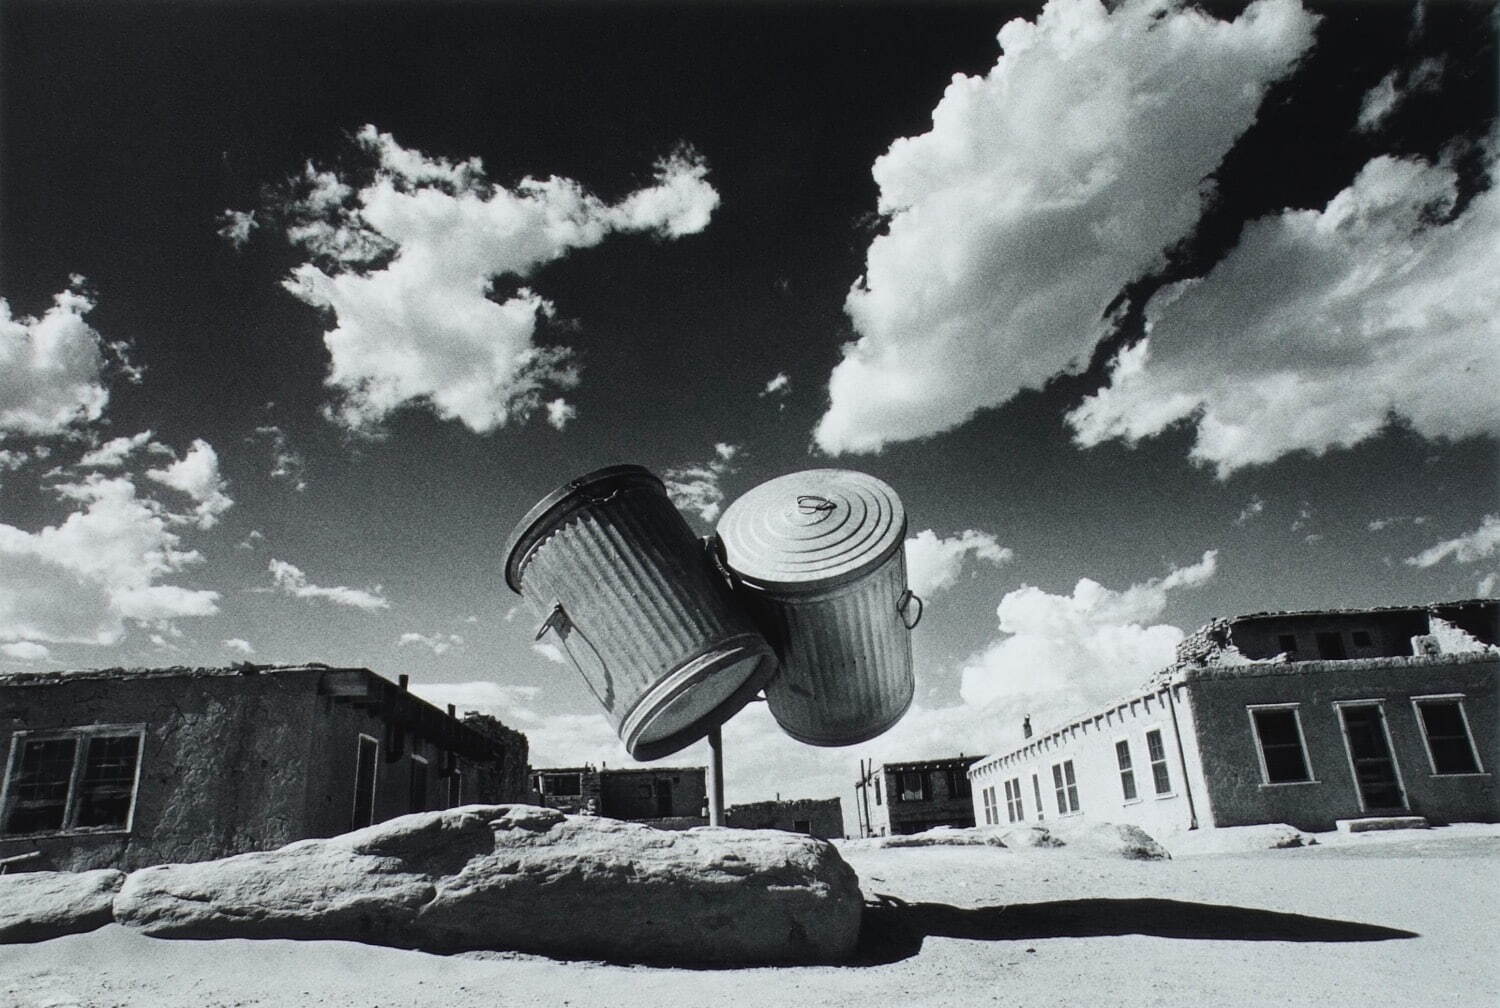 奈良原一高 《二つのゴミ罐─ニュー・メキシコ、1972》 「消滅した時間」より 1972年
©Ikko Narahara Archives